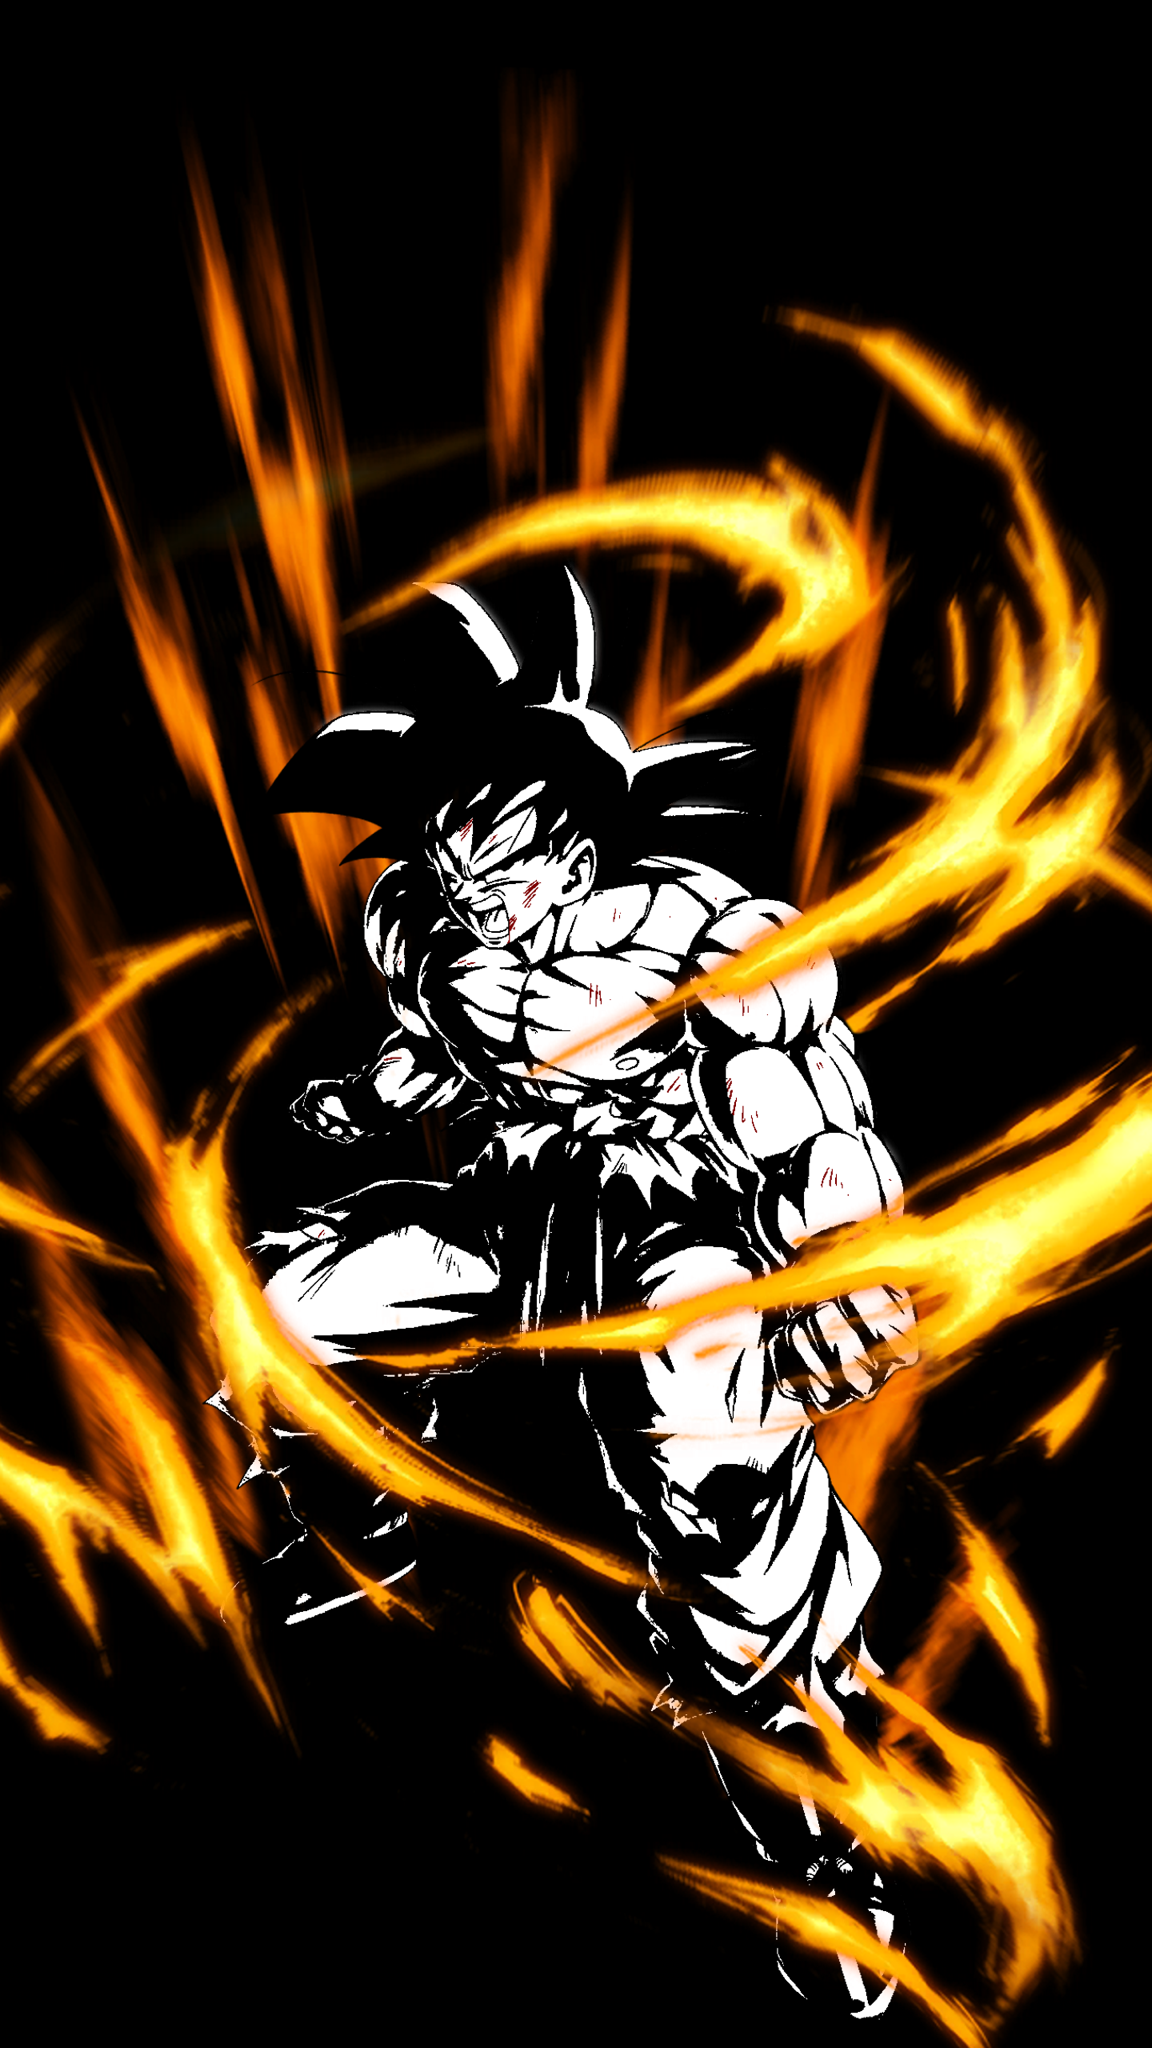 Angry Goku Super Saiyan God Wallpaper Free Download  FunSaaz